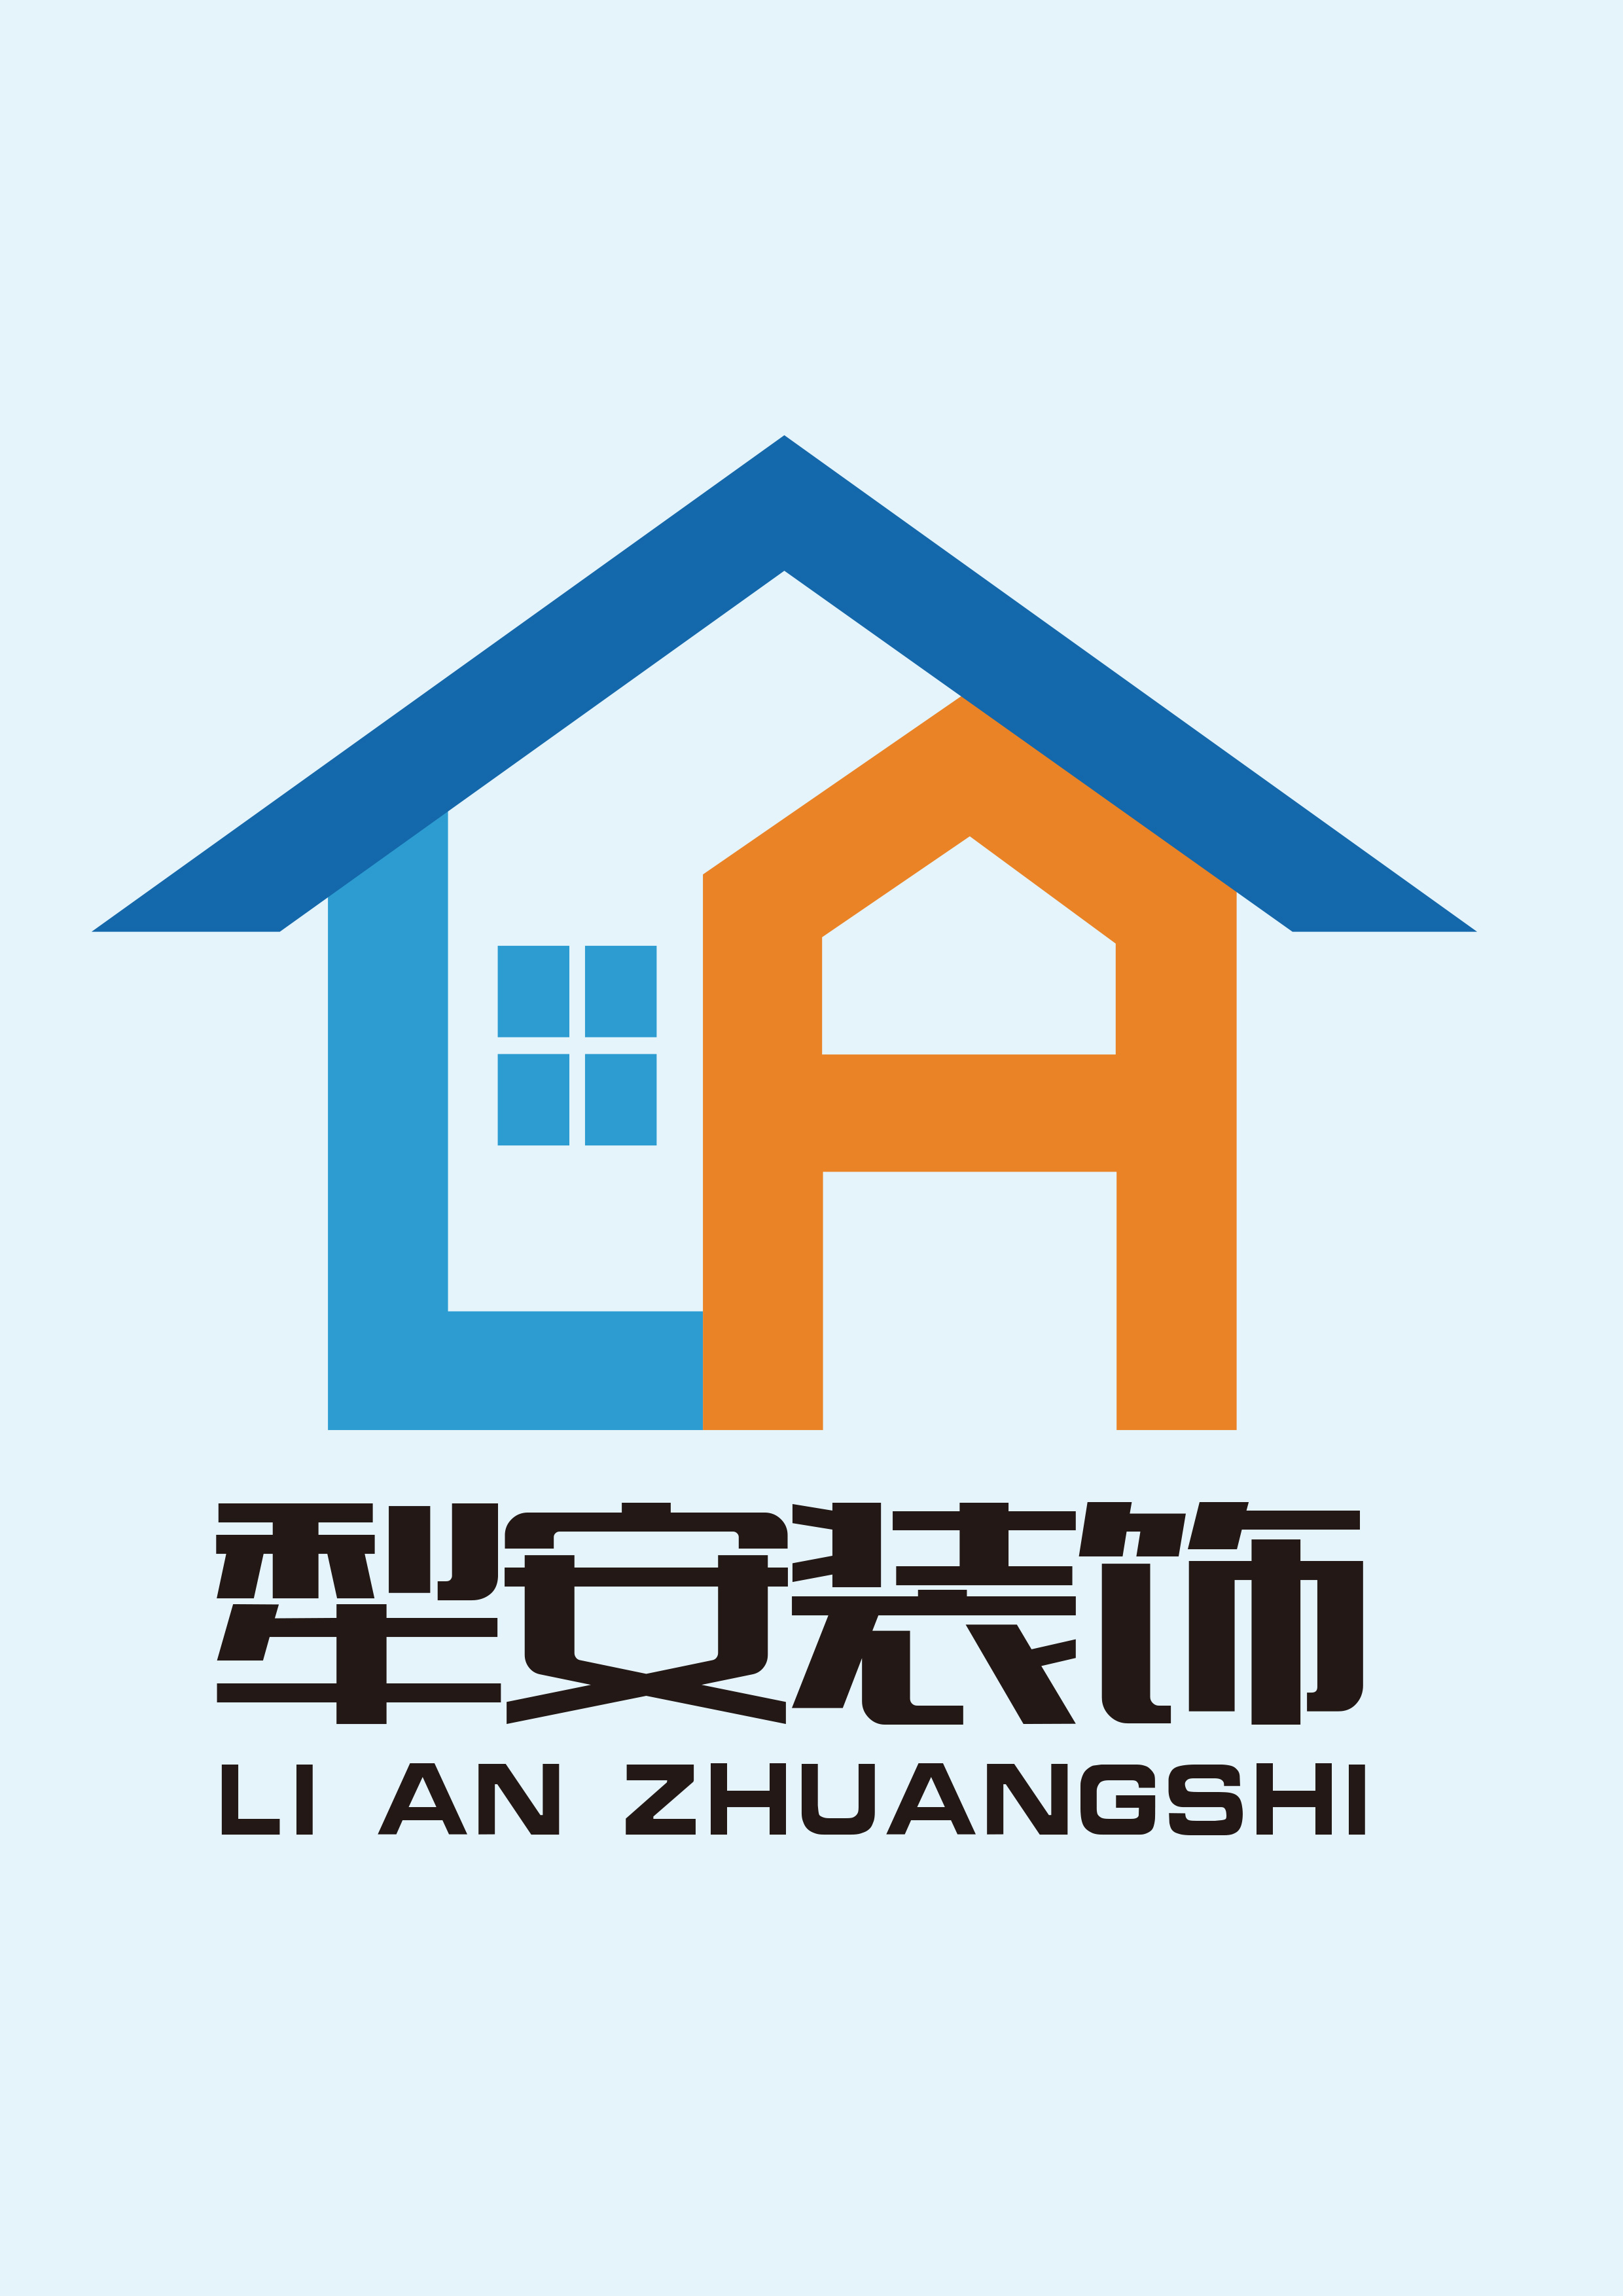 上海犁安建筑装饰设计工程有限公司;